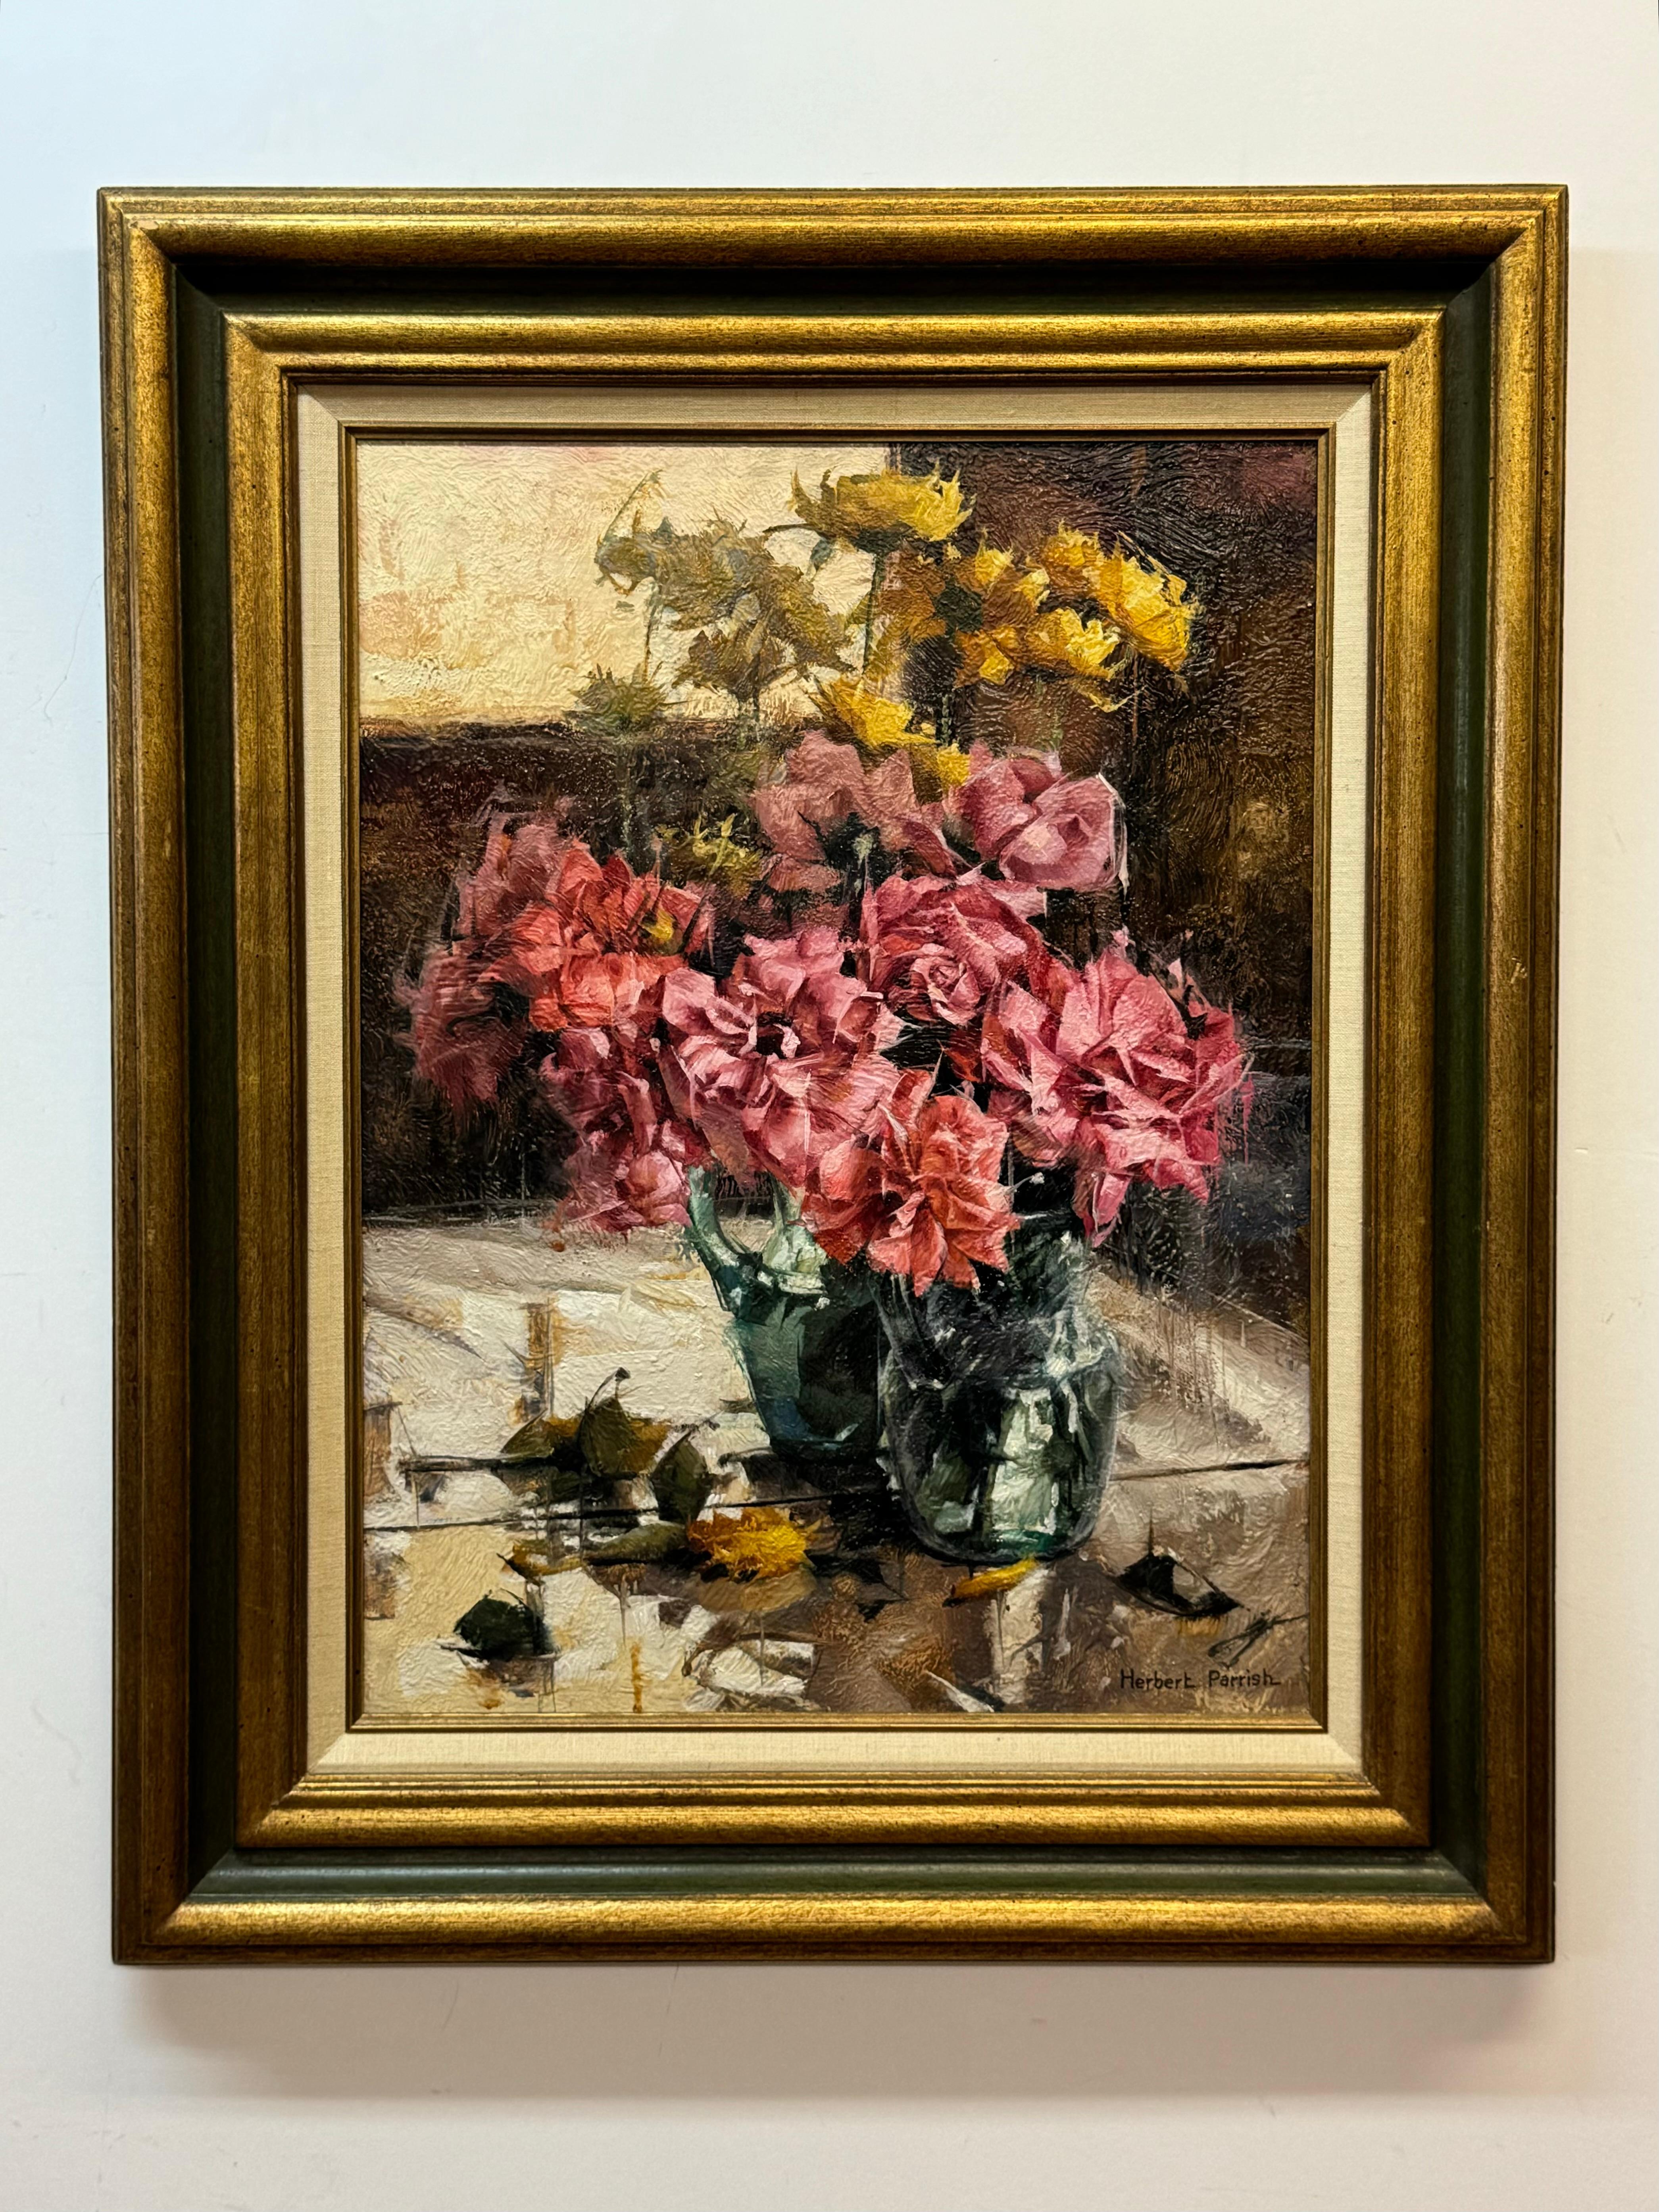 Herbert Parrish "Roses & Mirror" Floral Still Life. Oil on Masonite. 18 x 24 unframed, 26.5 x 32.5 framed.